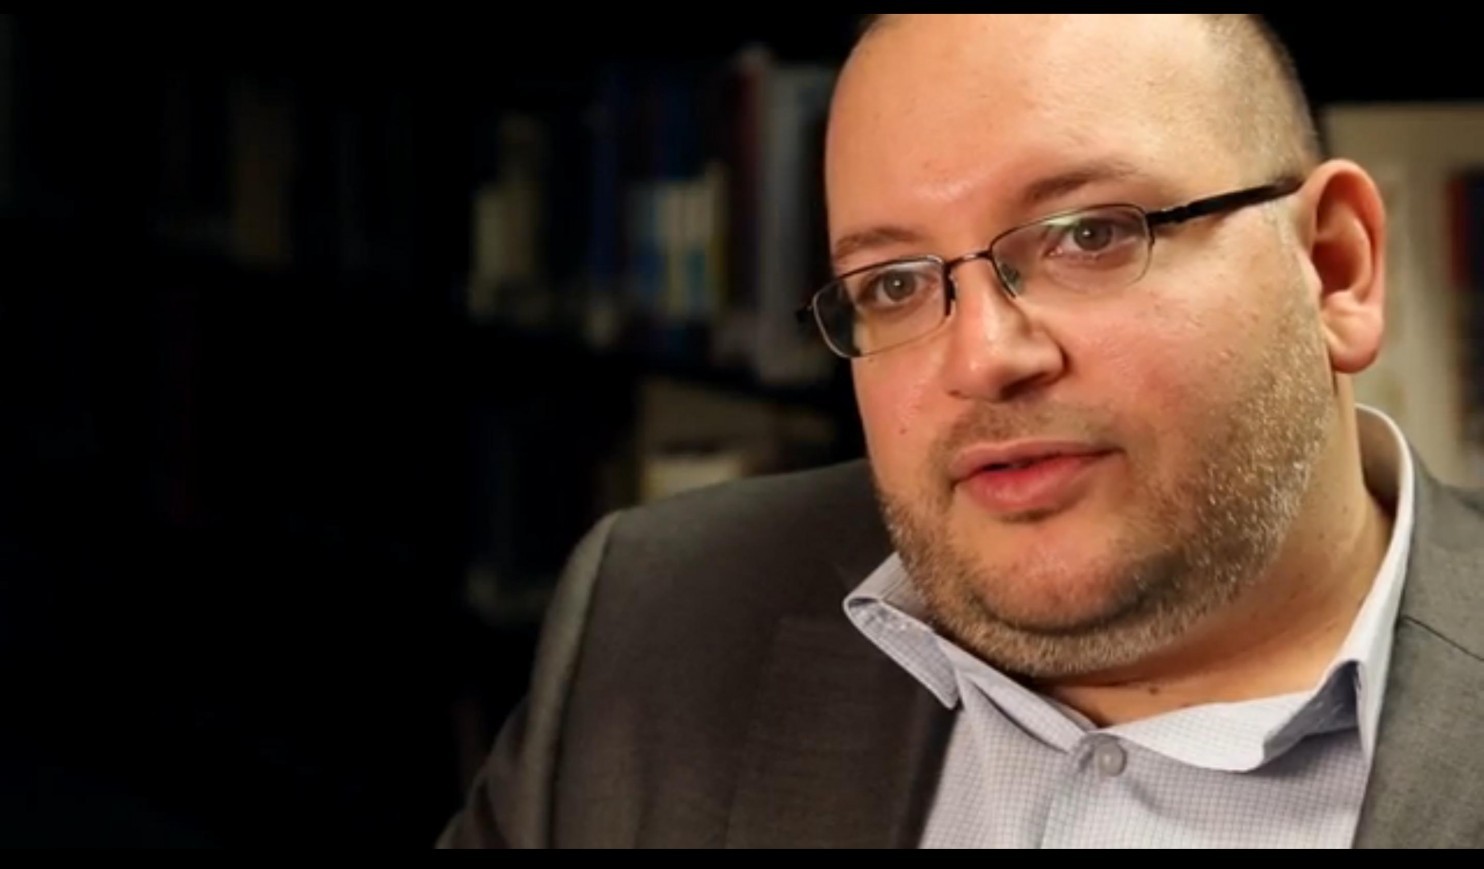 Δημοσιογράφος της Washington Post κατηγορούμενος στο Ιράν